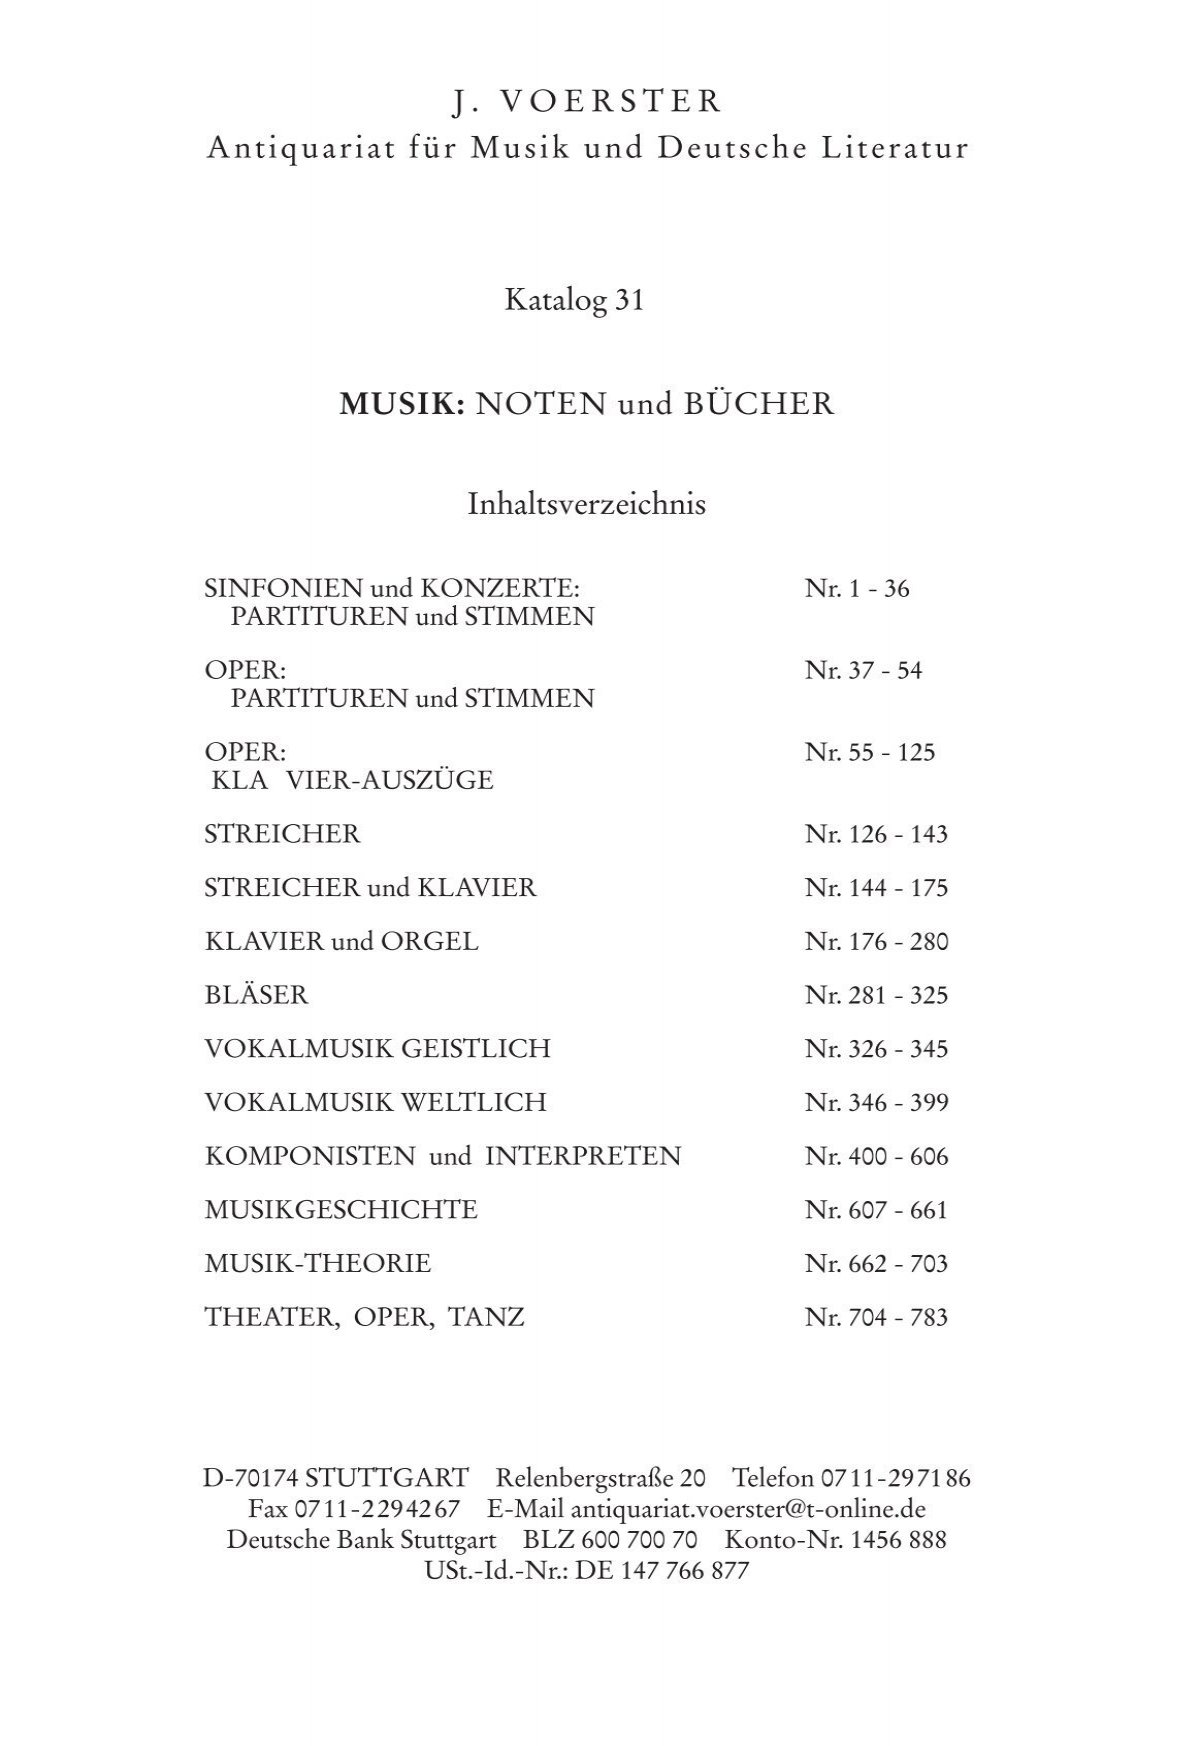 Katalog 31 Voerster-6.indd - J. Voerster - Antiquariat für Musik und